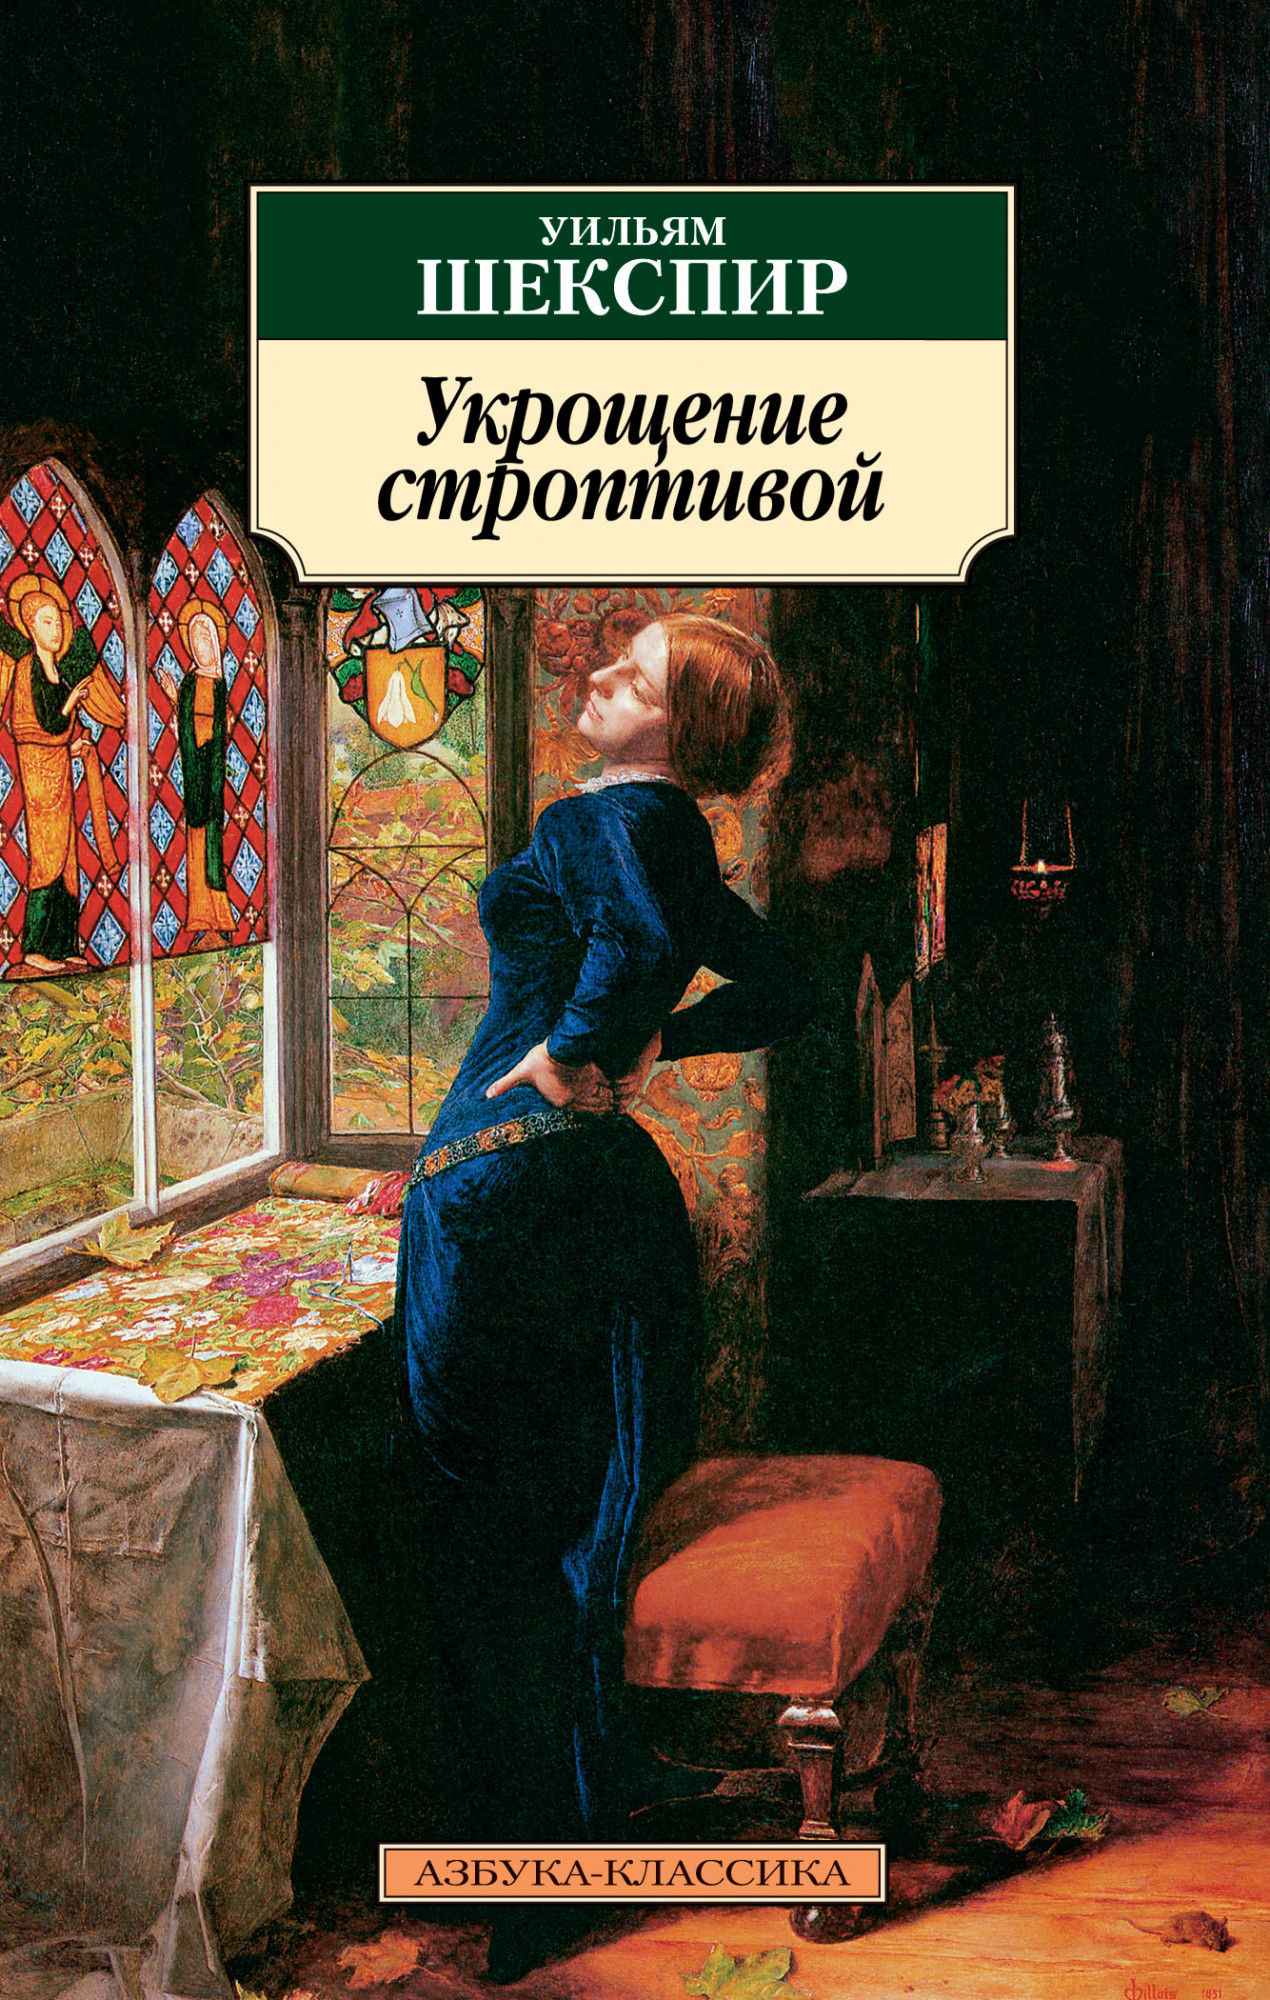 Book “Укрощение строптивой” by Уильям Шекспир